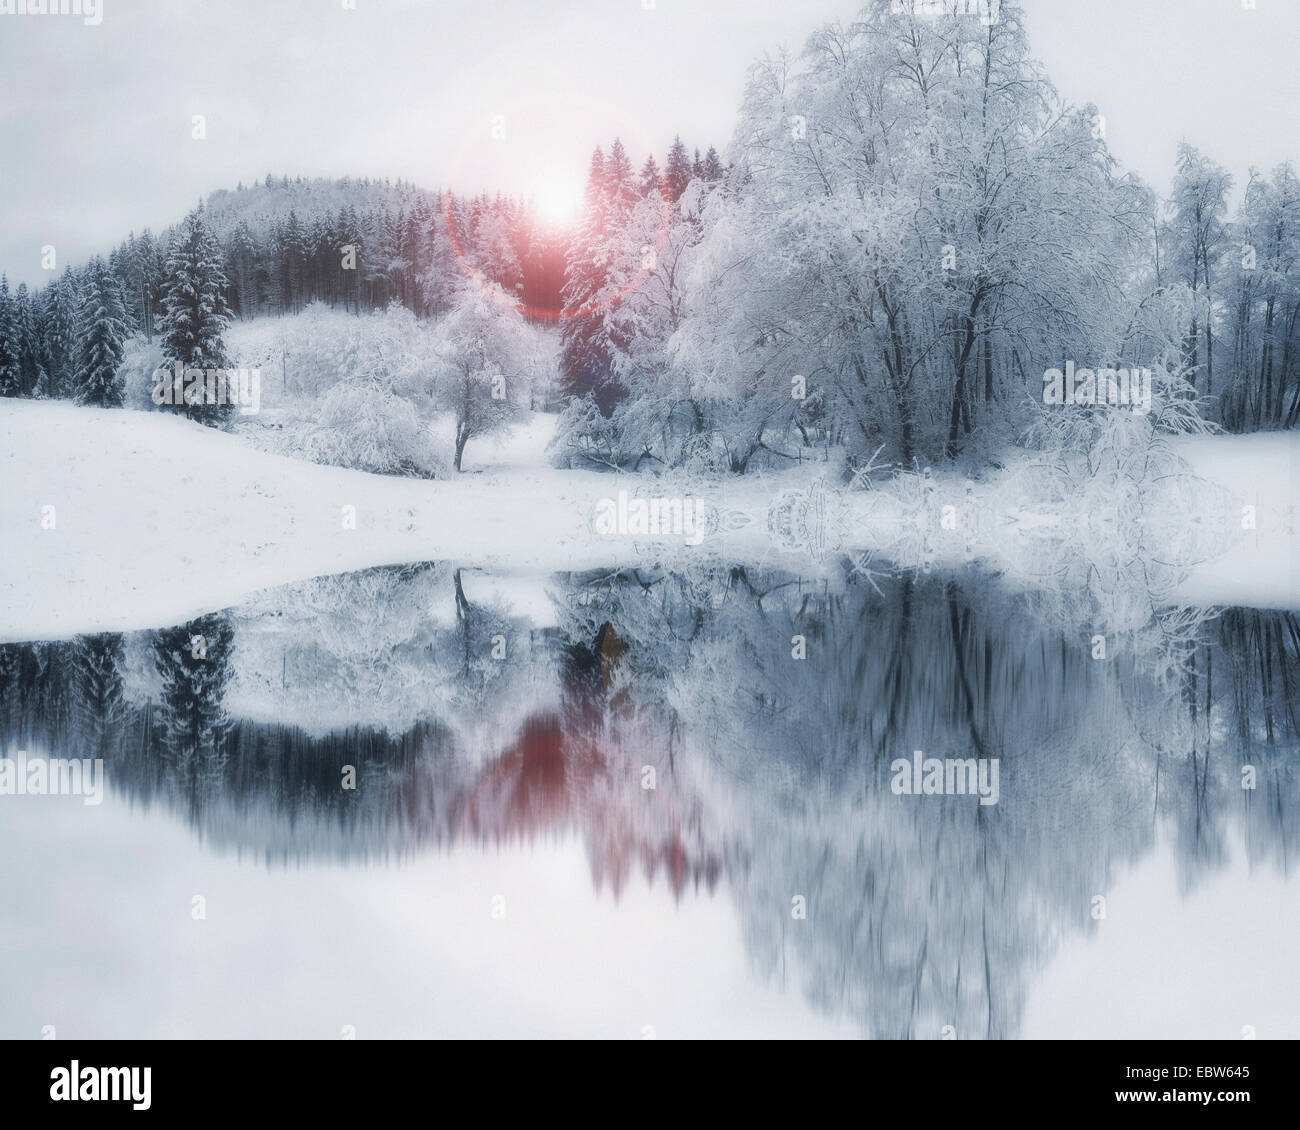 DE - Baviera: Winter Wonderland Foto de stock